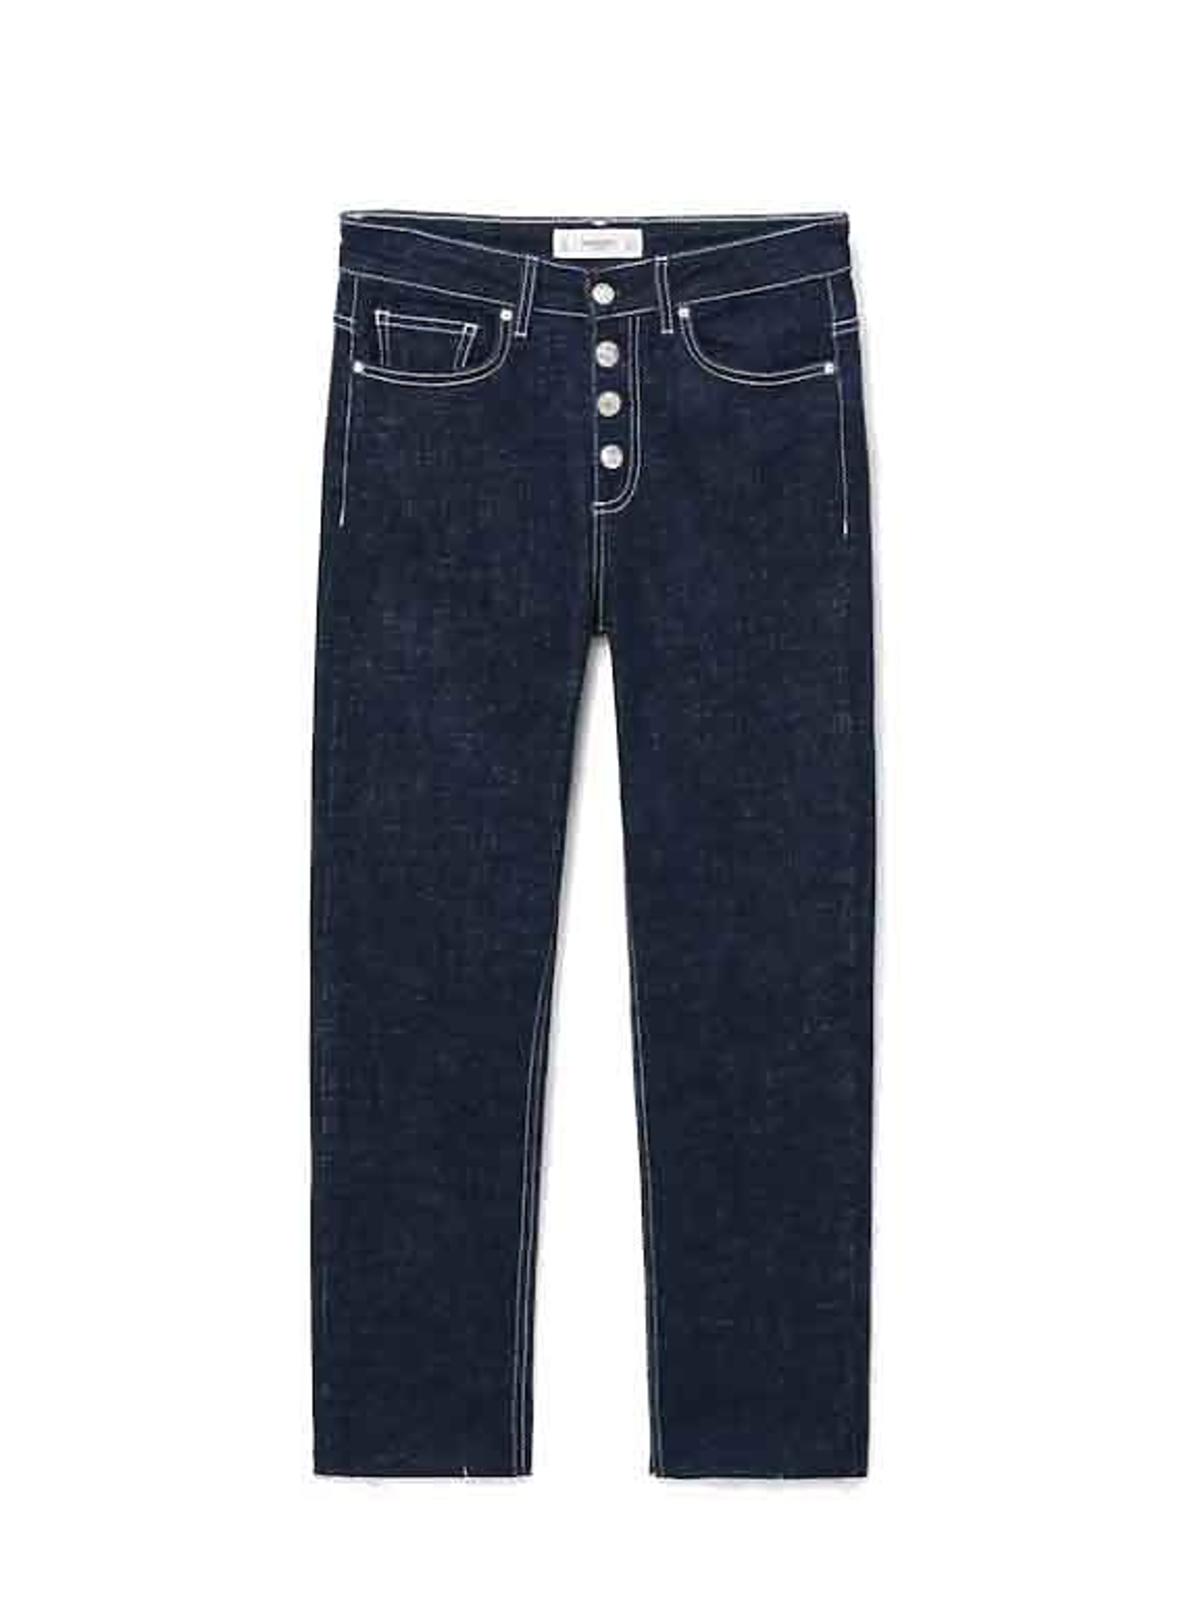 Proste jeansy z kontrastującymi szwami, 149,99 zł (40% obniżki)